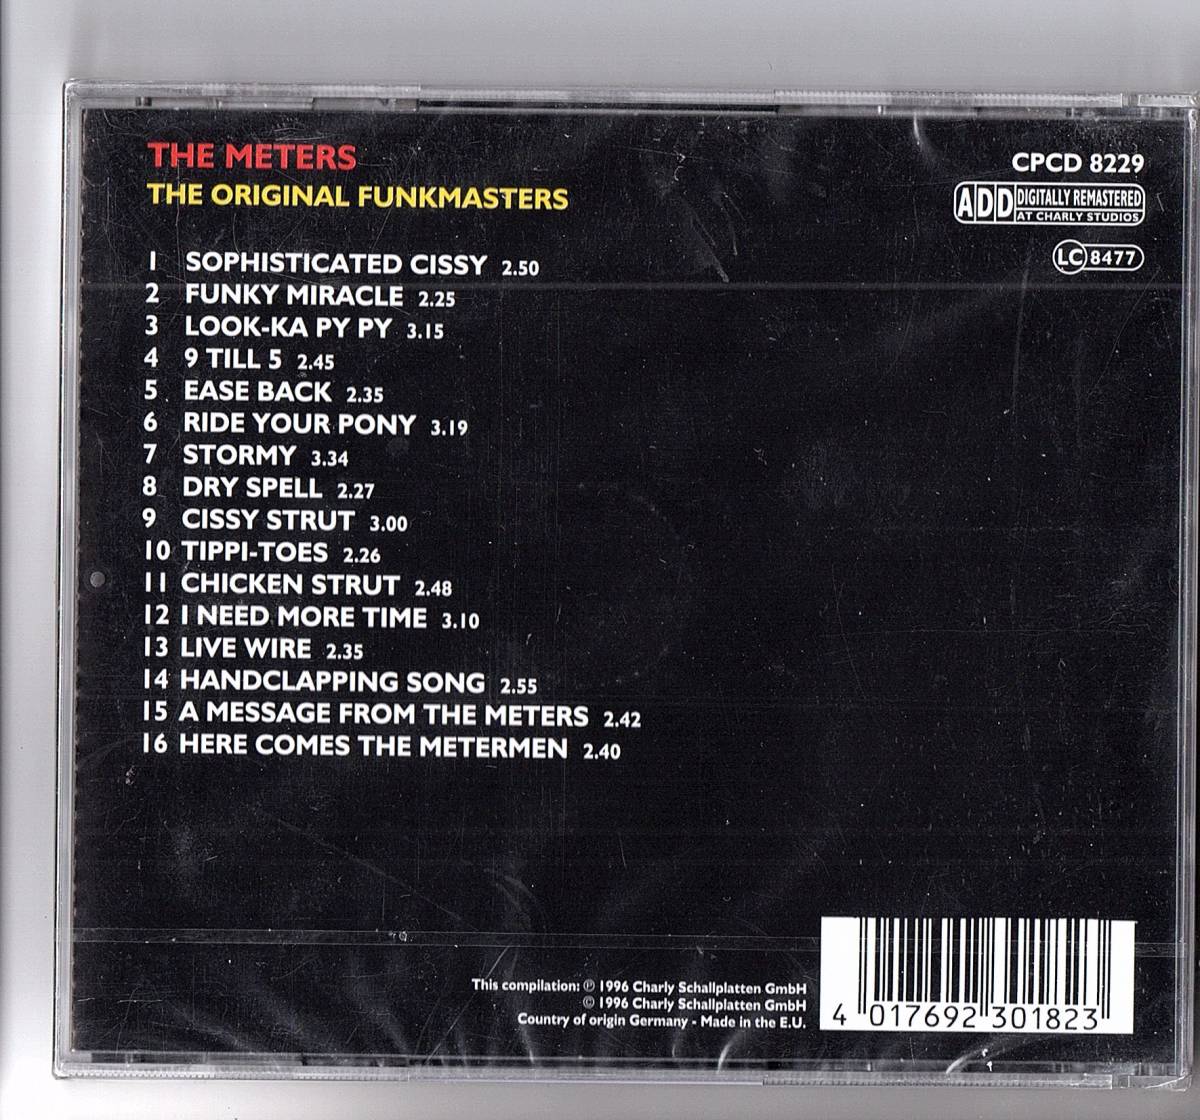 【新品未開封・輸入盤CD】「The Original Funkmasters / THE METERS ザ・ミーターズ 」1996年・ベスト盤 CPCD-8229_画像2